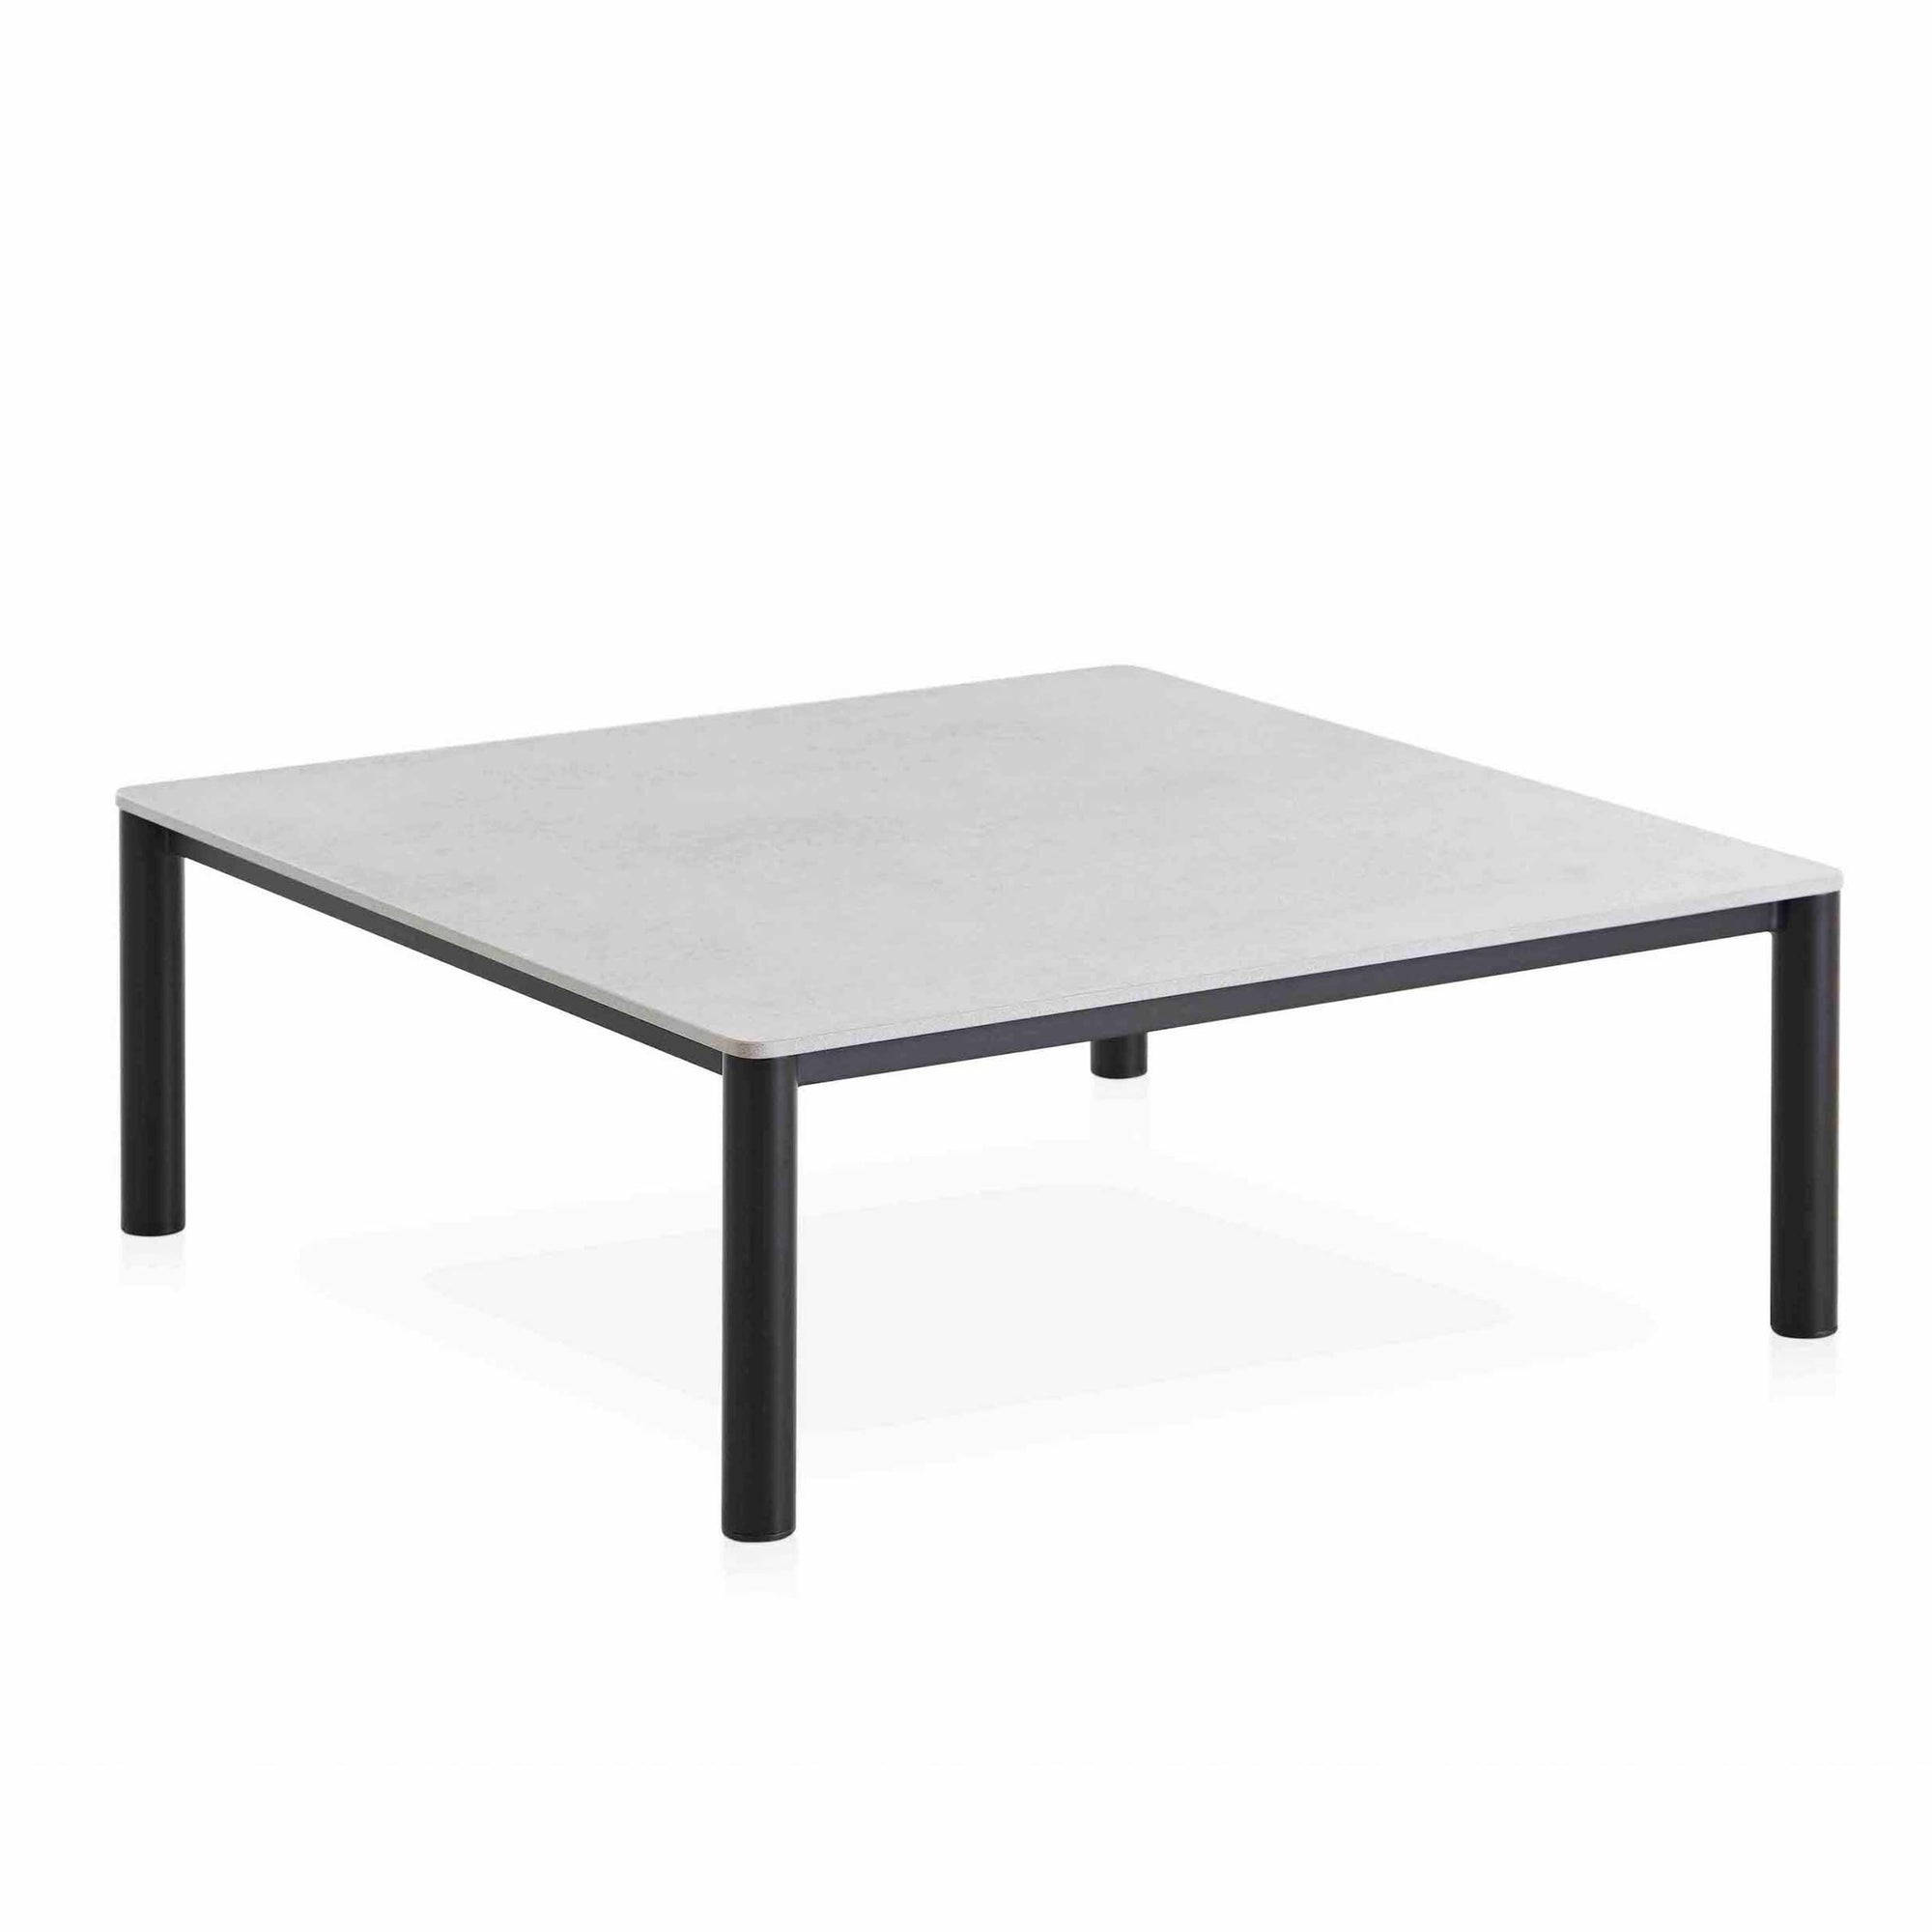 Gandia Blasco Bosc quadratic coffee table 94 cm